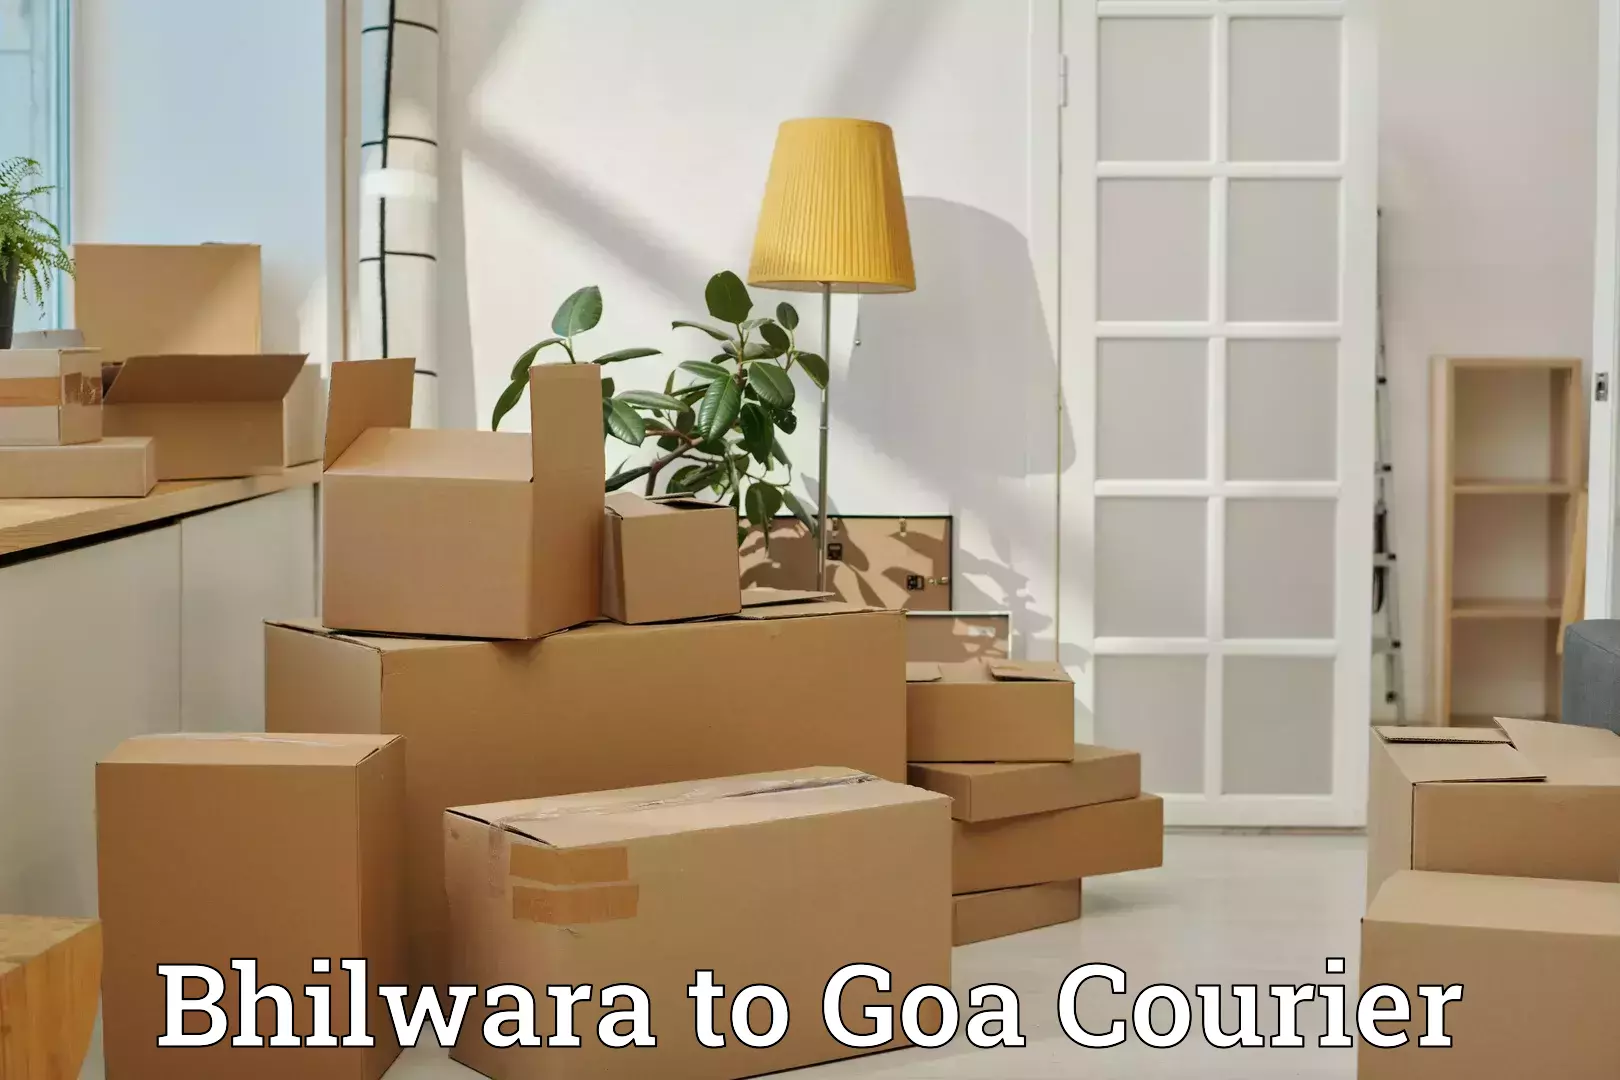 Automated luggage transport Bhilwara to Goa